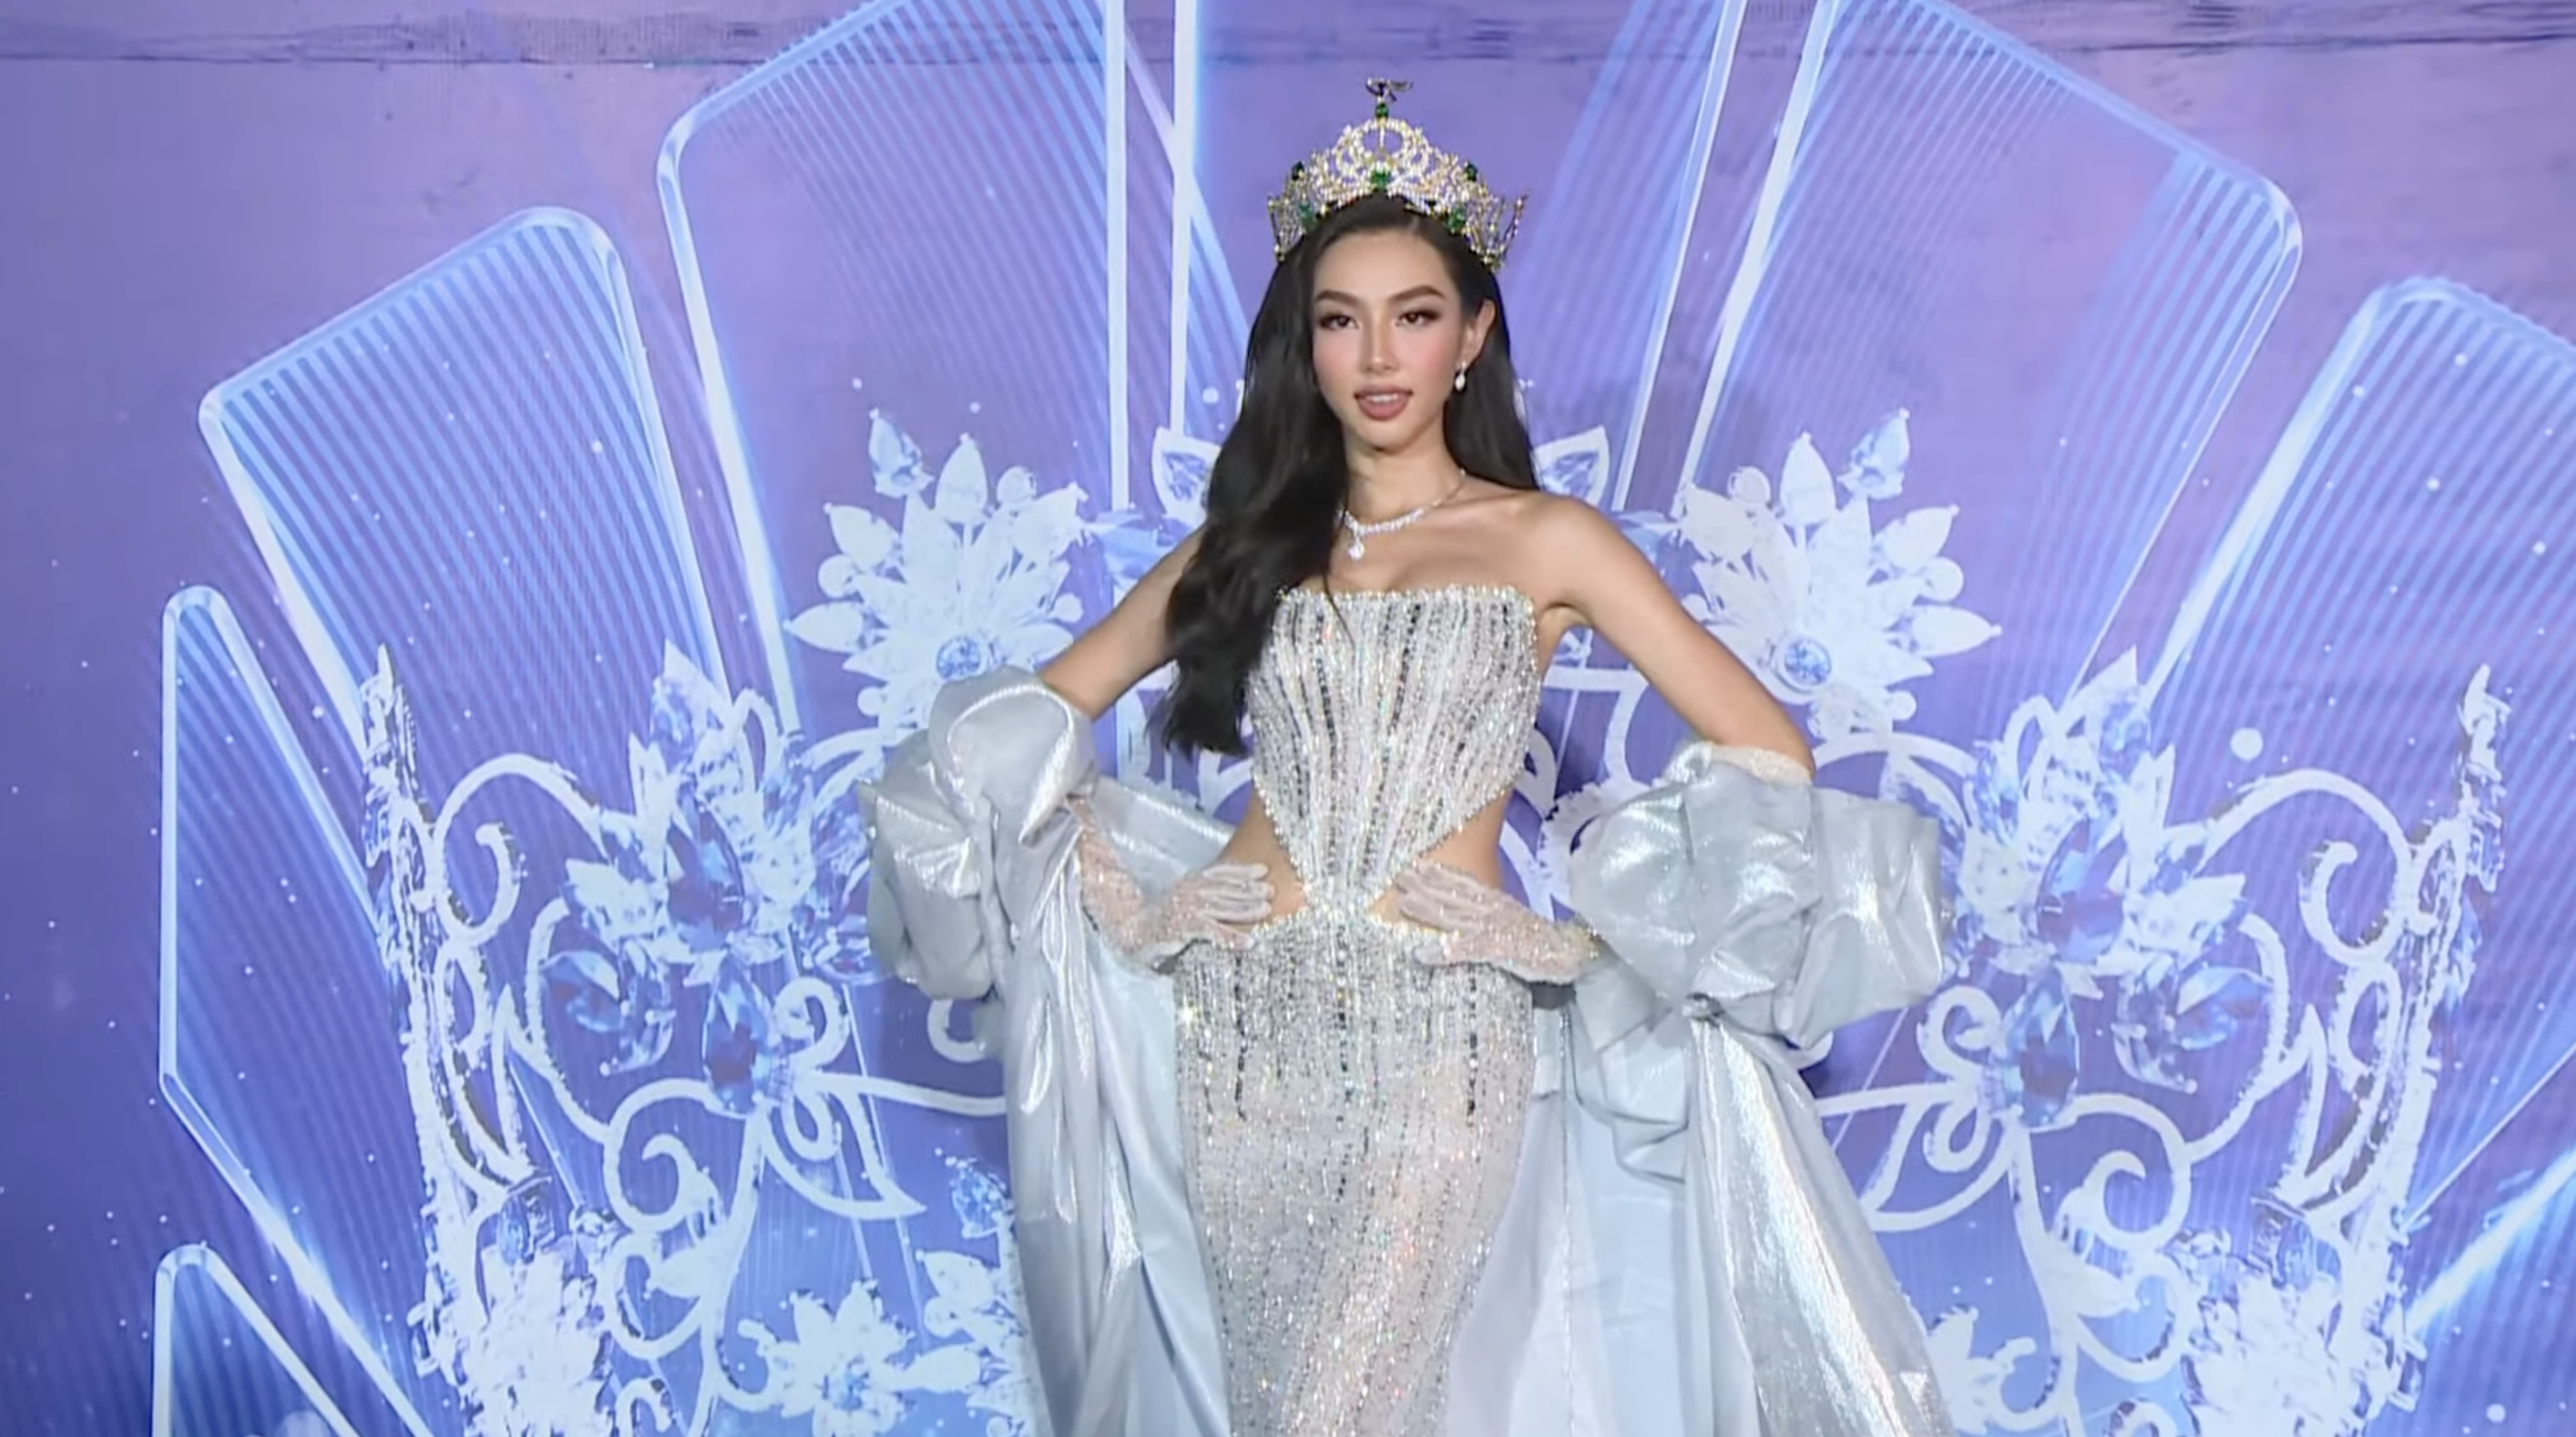 Hoa hậu Thuỳ Tiên rinh vương miện 12 tỷ đồng sải bước thảm đỏ.